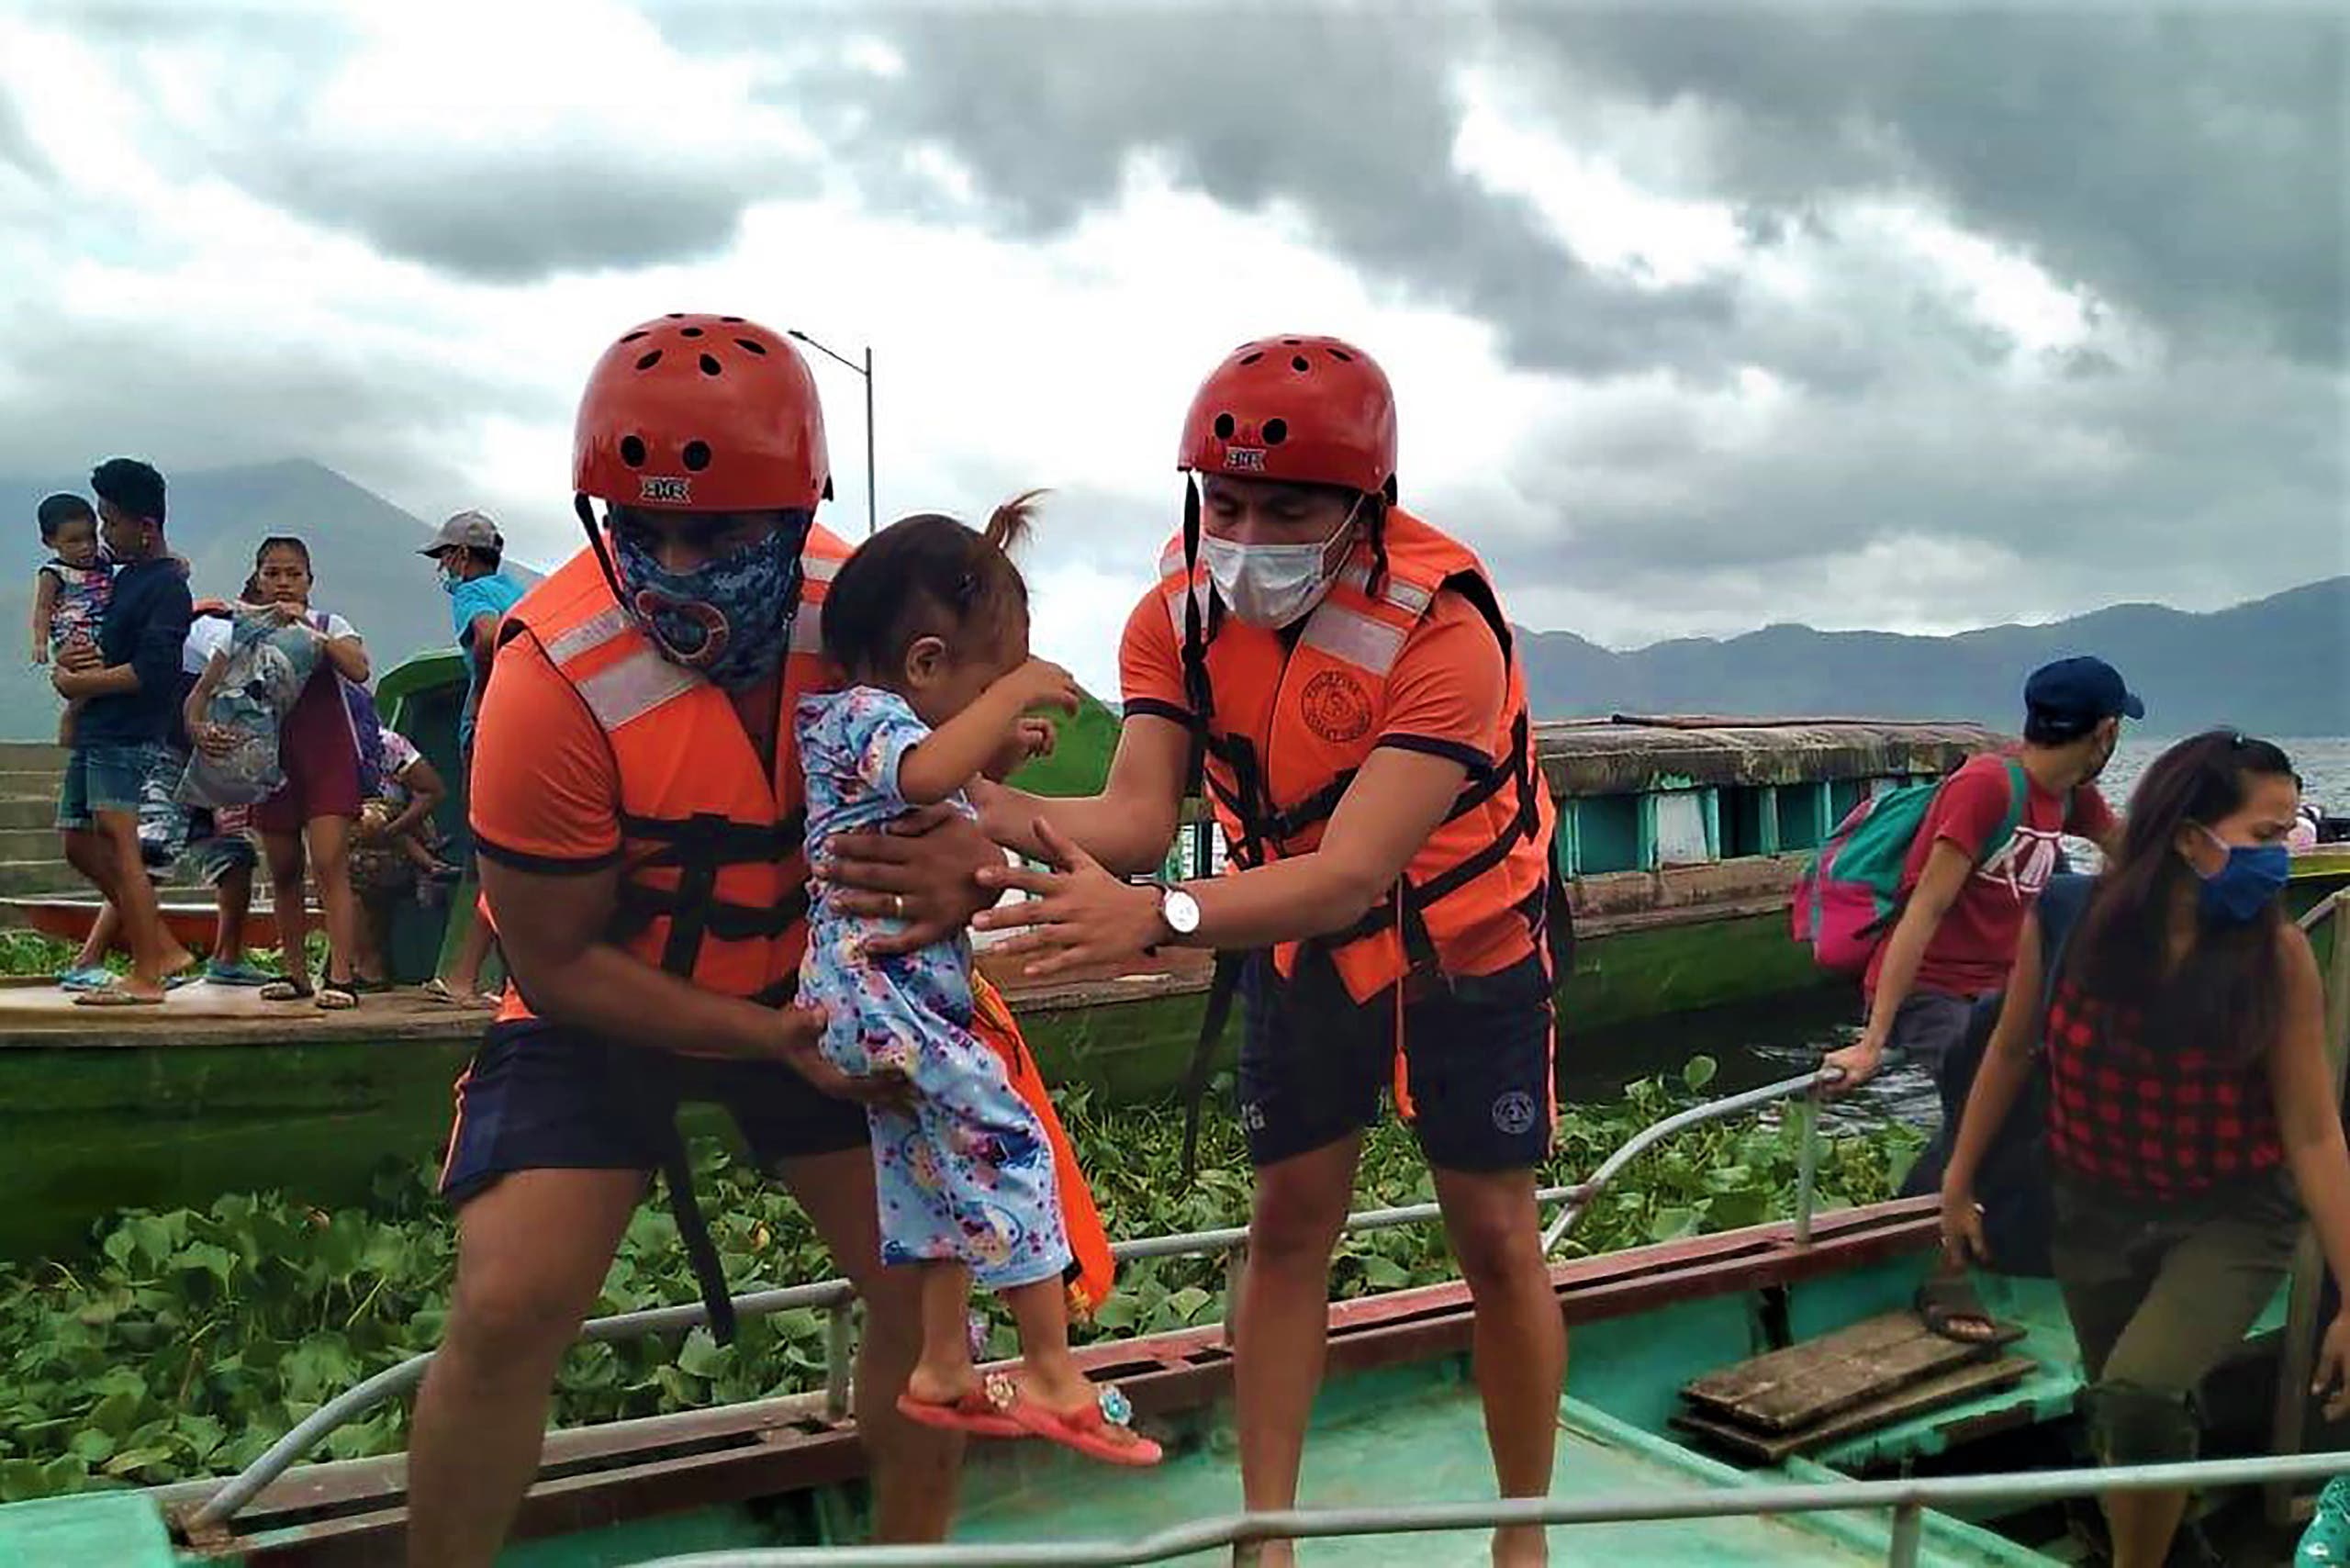 الإعصار غوني يضرب الفلبين.. وإجلاء قرابة مليون شخص